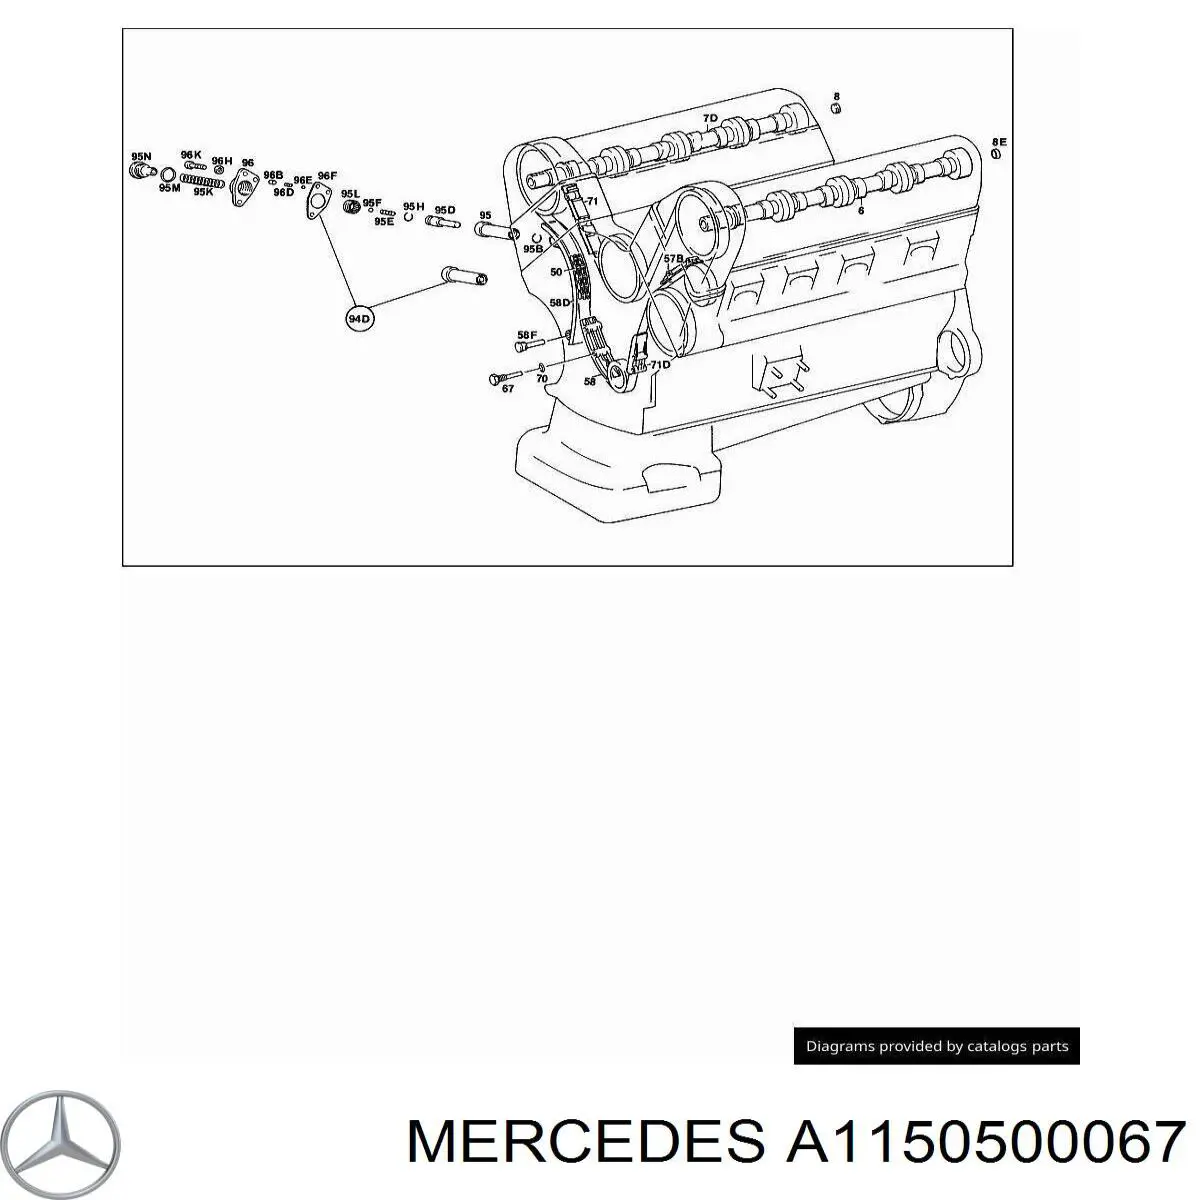 A1150500067 Mercedes комплект прокладок двигателя верхний